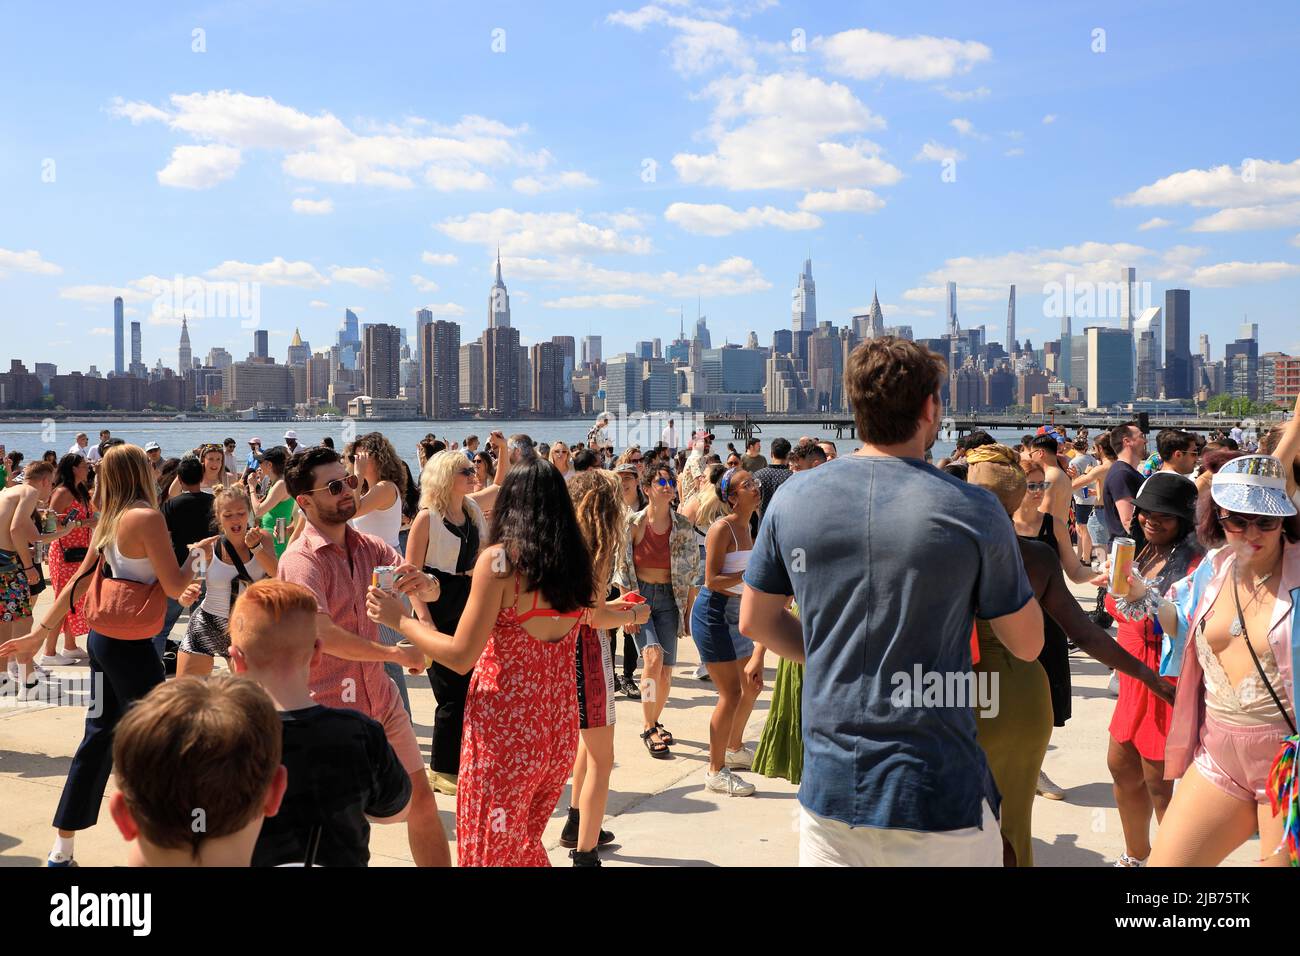 Les gens dansent au Hot Honey Sundays, fête de danse en plein air au Greenpoint terminal Market, avec East River et Manhattan Skyline en arrière-plan.Greenpoint.Brooklyn.New York City.USA Banque D'Images